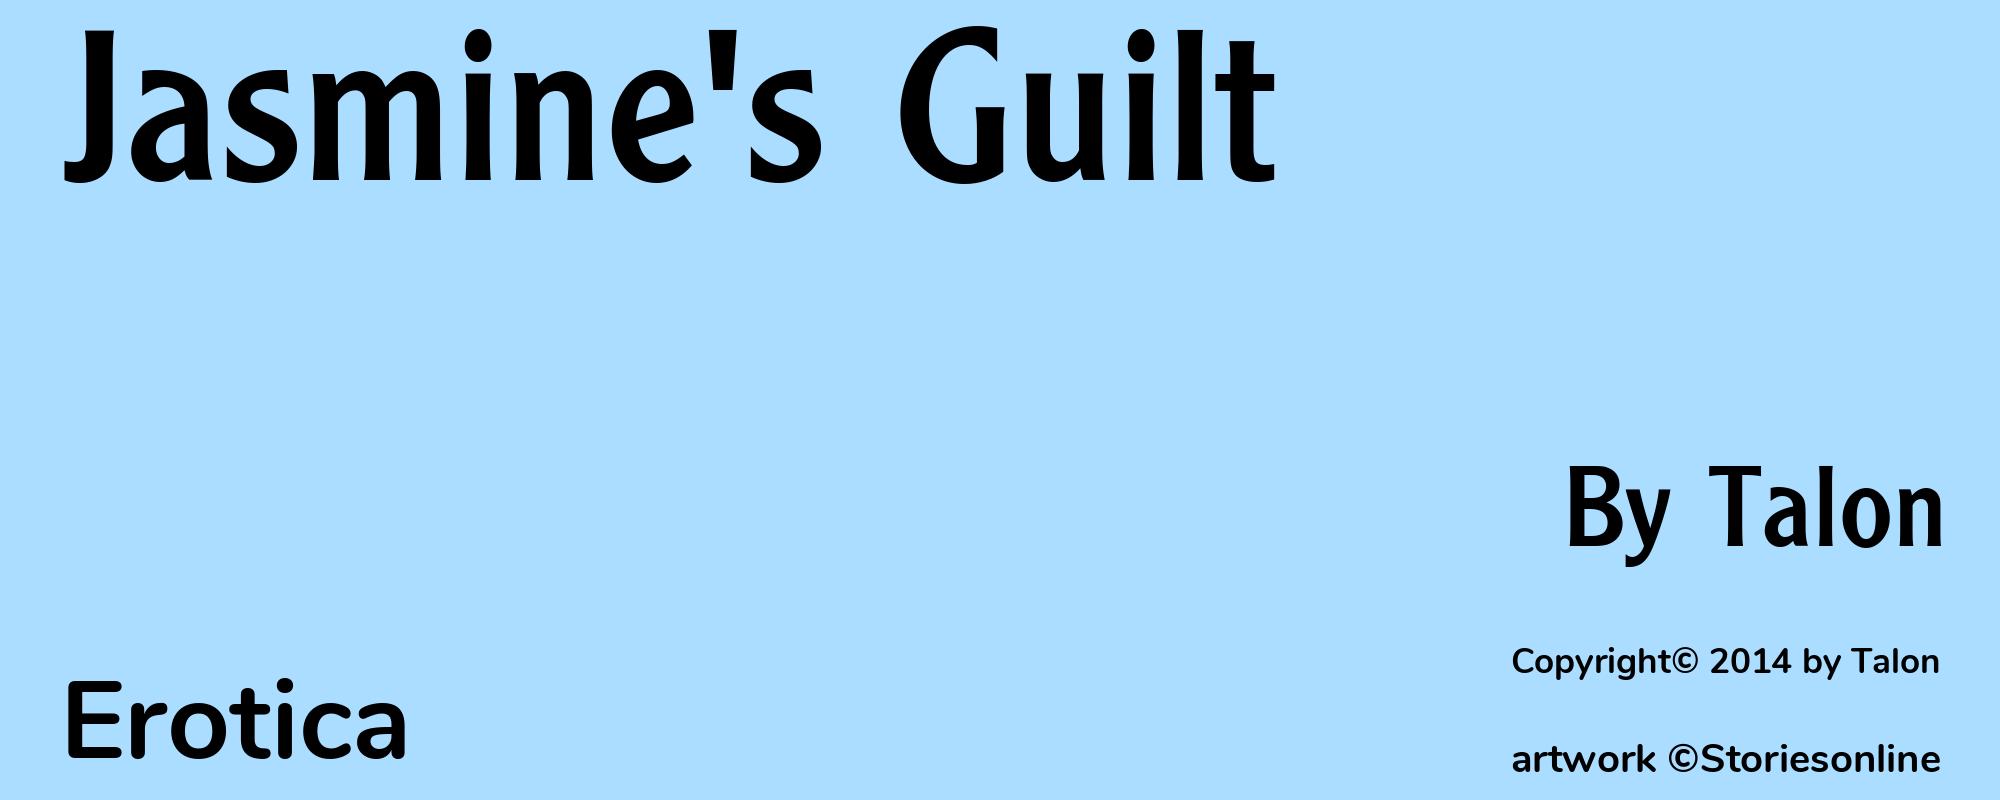 Jasmine's Guilt - Cover